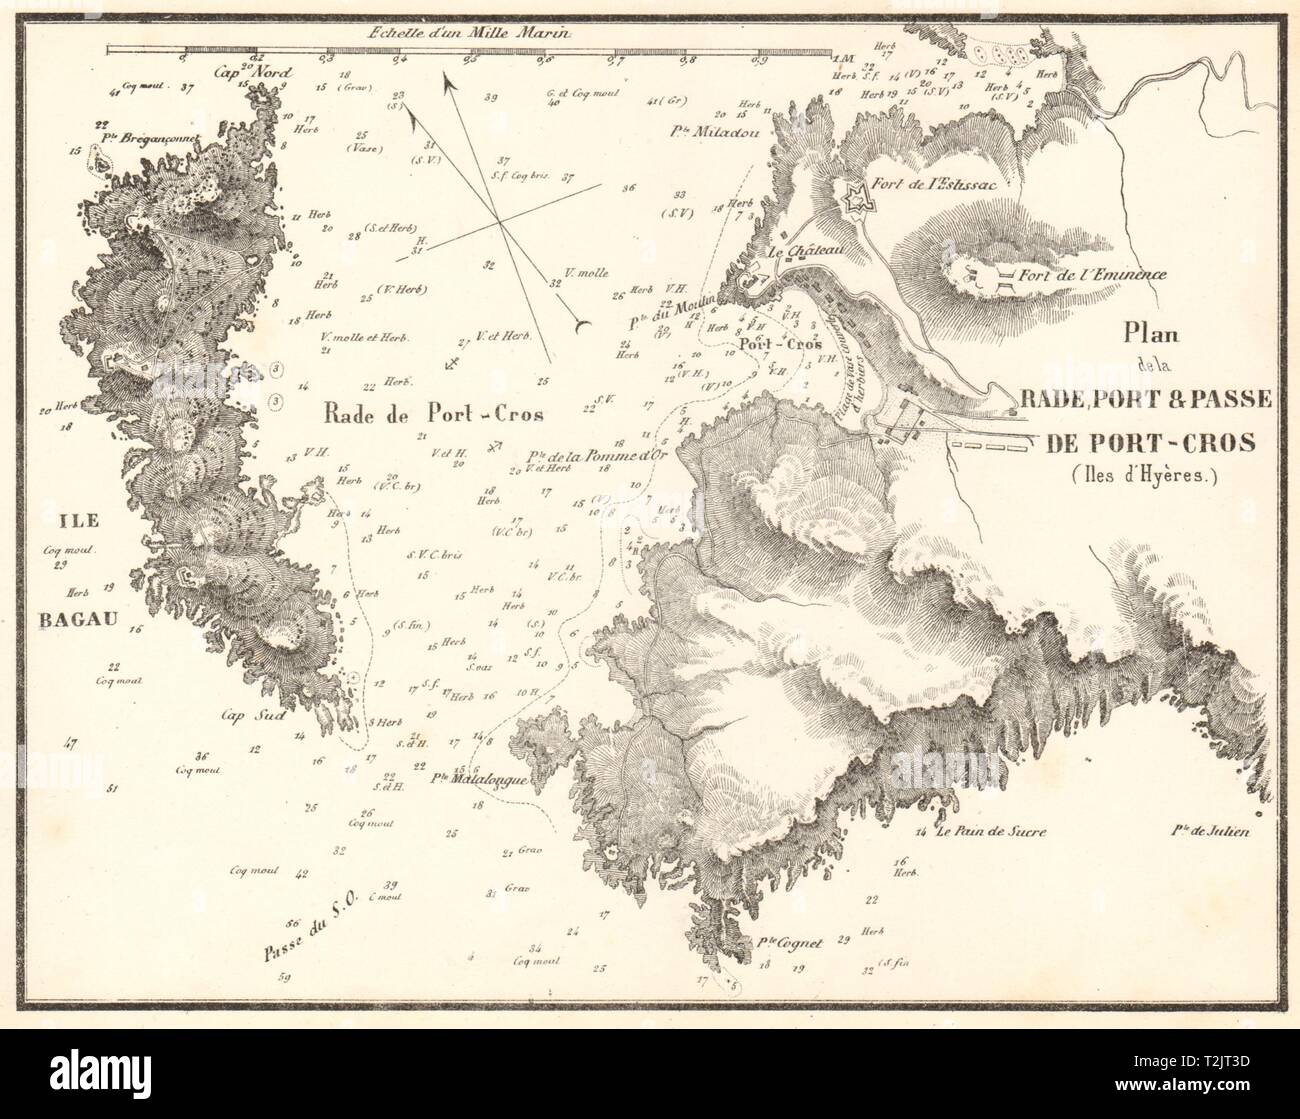 La Rade, Port & Passe de Port-Cros, Îles d'Hyères. Var. GAUTTIER 1851 old map Stock Photo